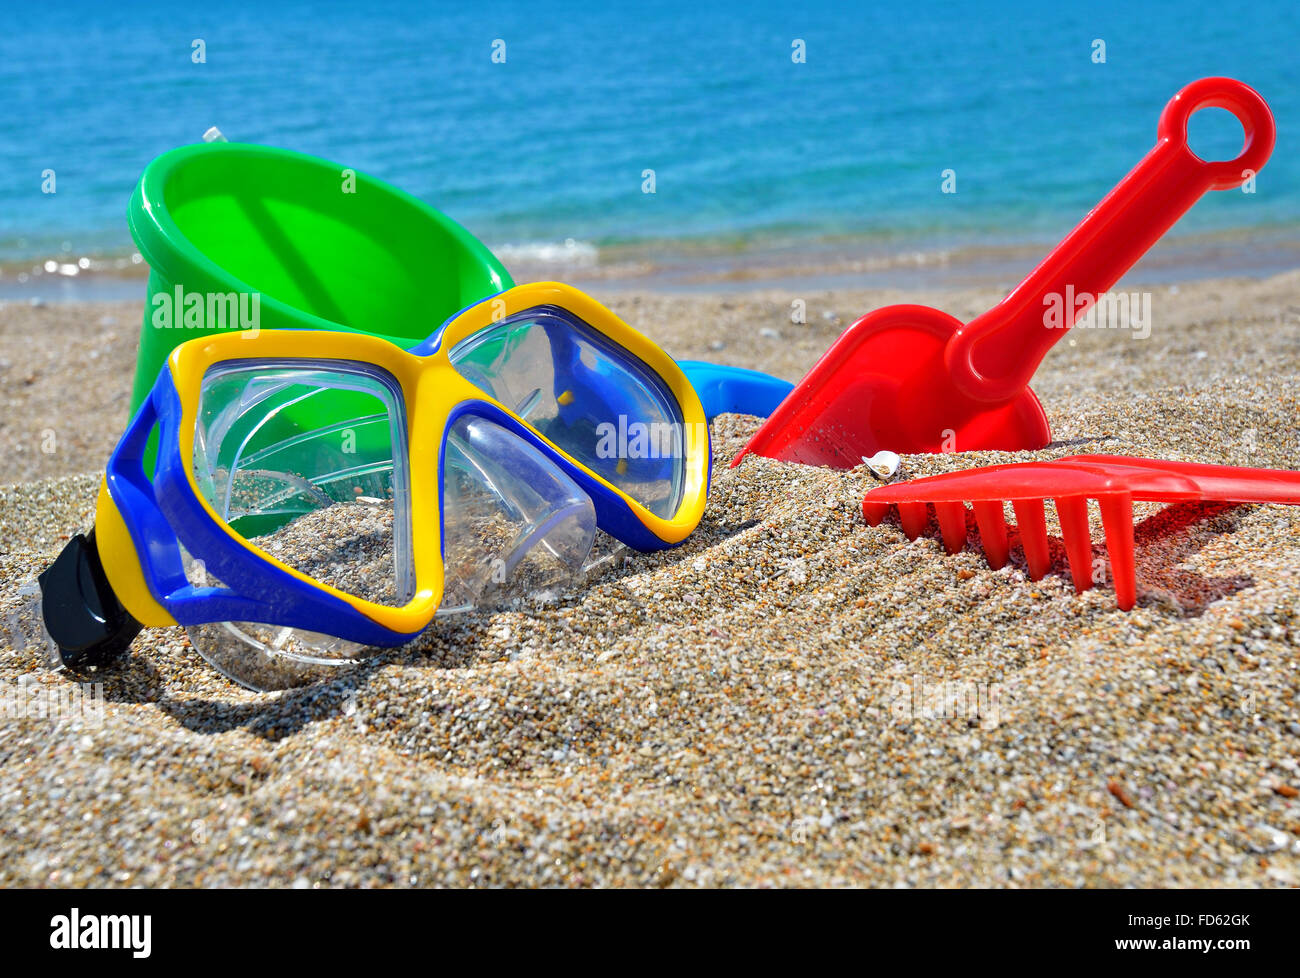 Juguetes para bebé en la arena de la playa frente al mar azul Foto de stock